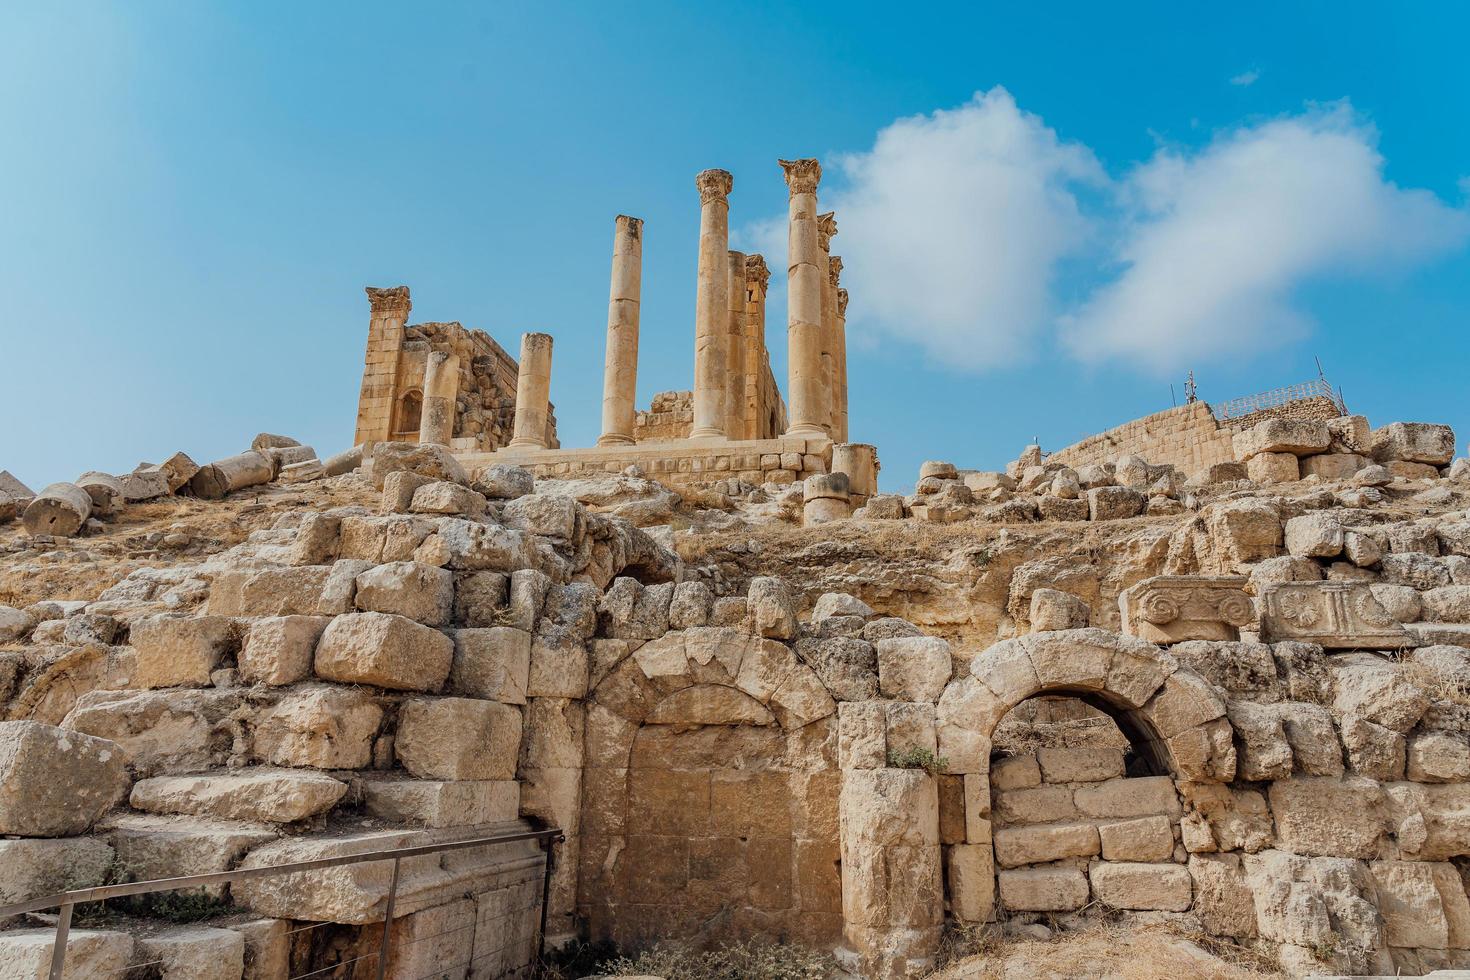 Temple of Artemis in Gerasa, present-day Jerash, Jordan photo